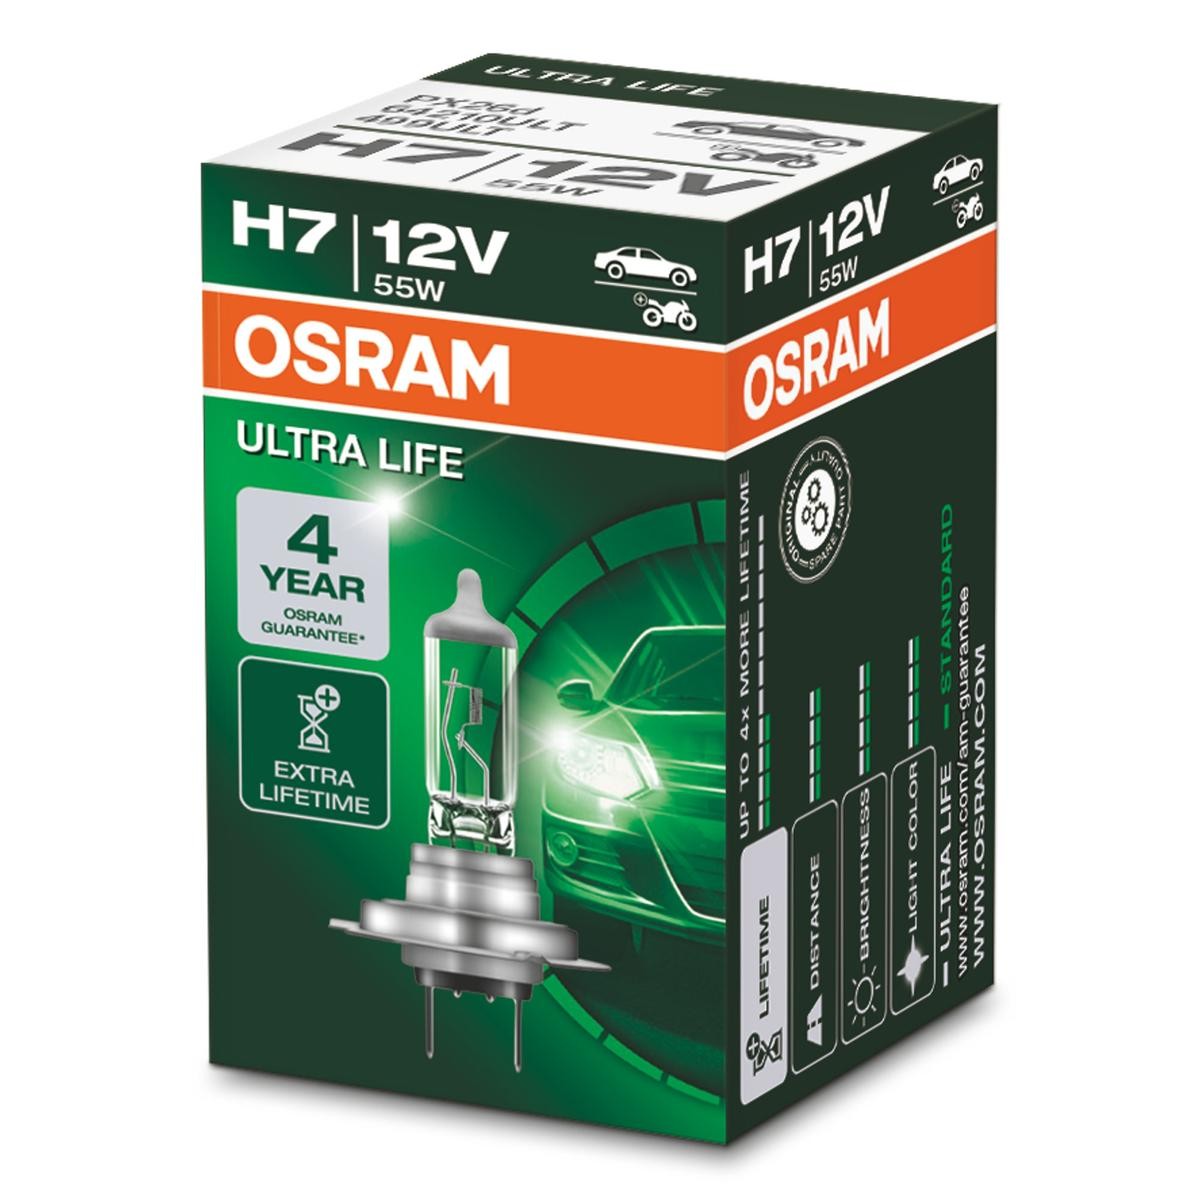 Köp OSRAM 64210ULT - Karosseri till Toyota: H7 12V 55W PX26d 3200K Halogen